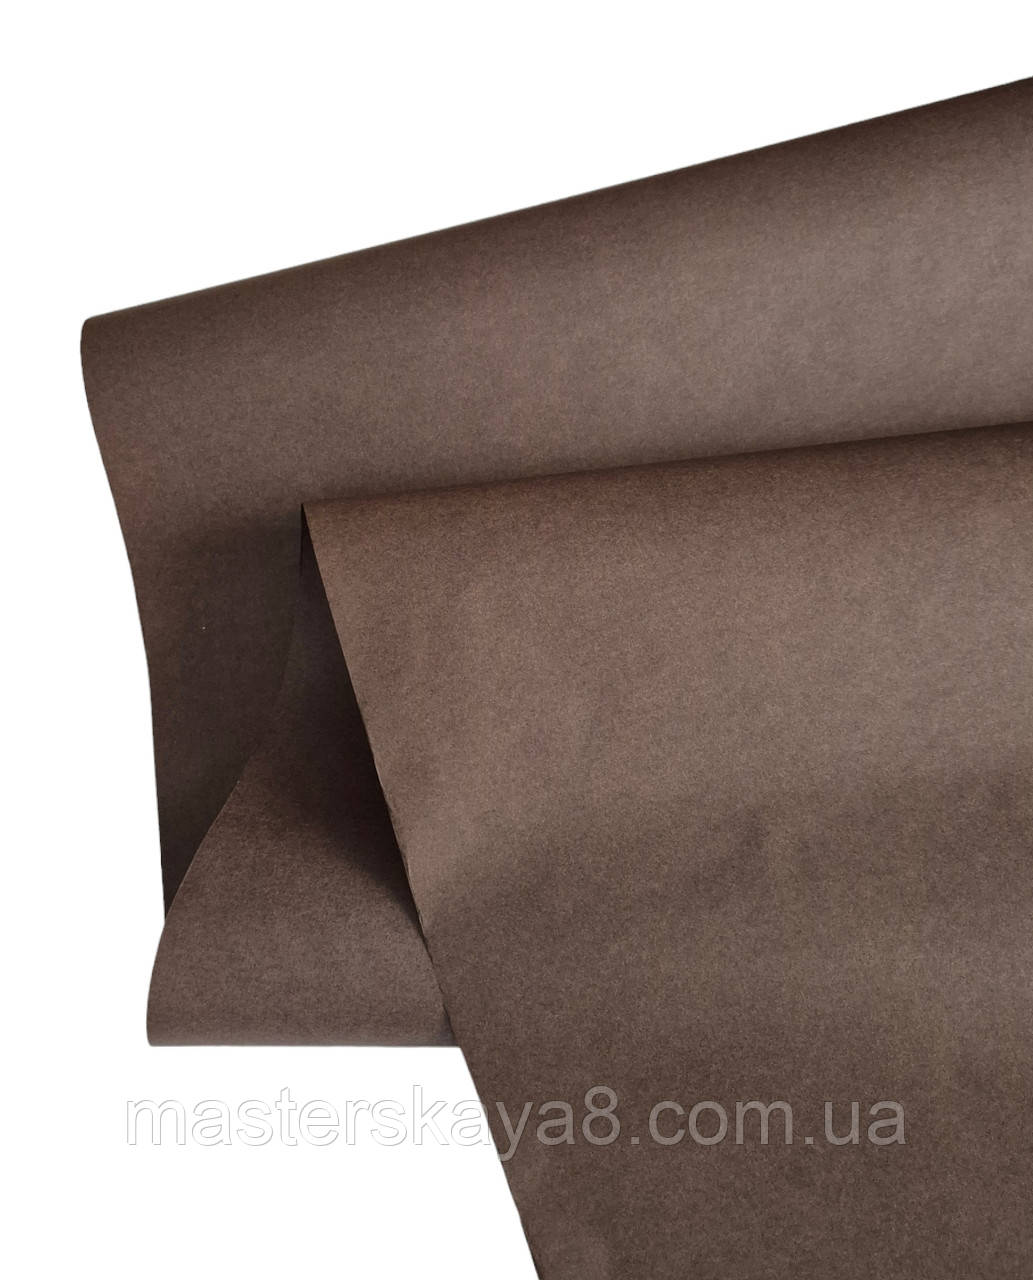 Пергамент папір (відео),  20 метров рулон, колір коричневий/шоколадний